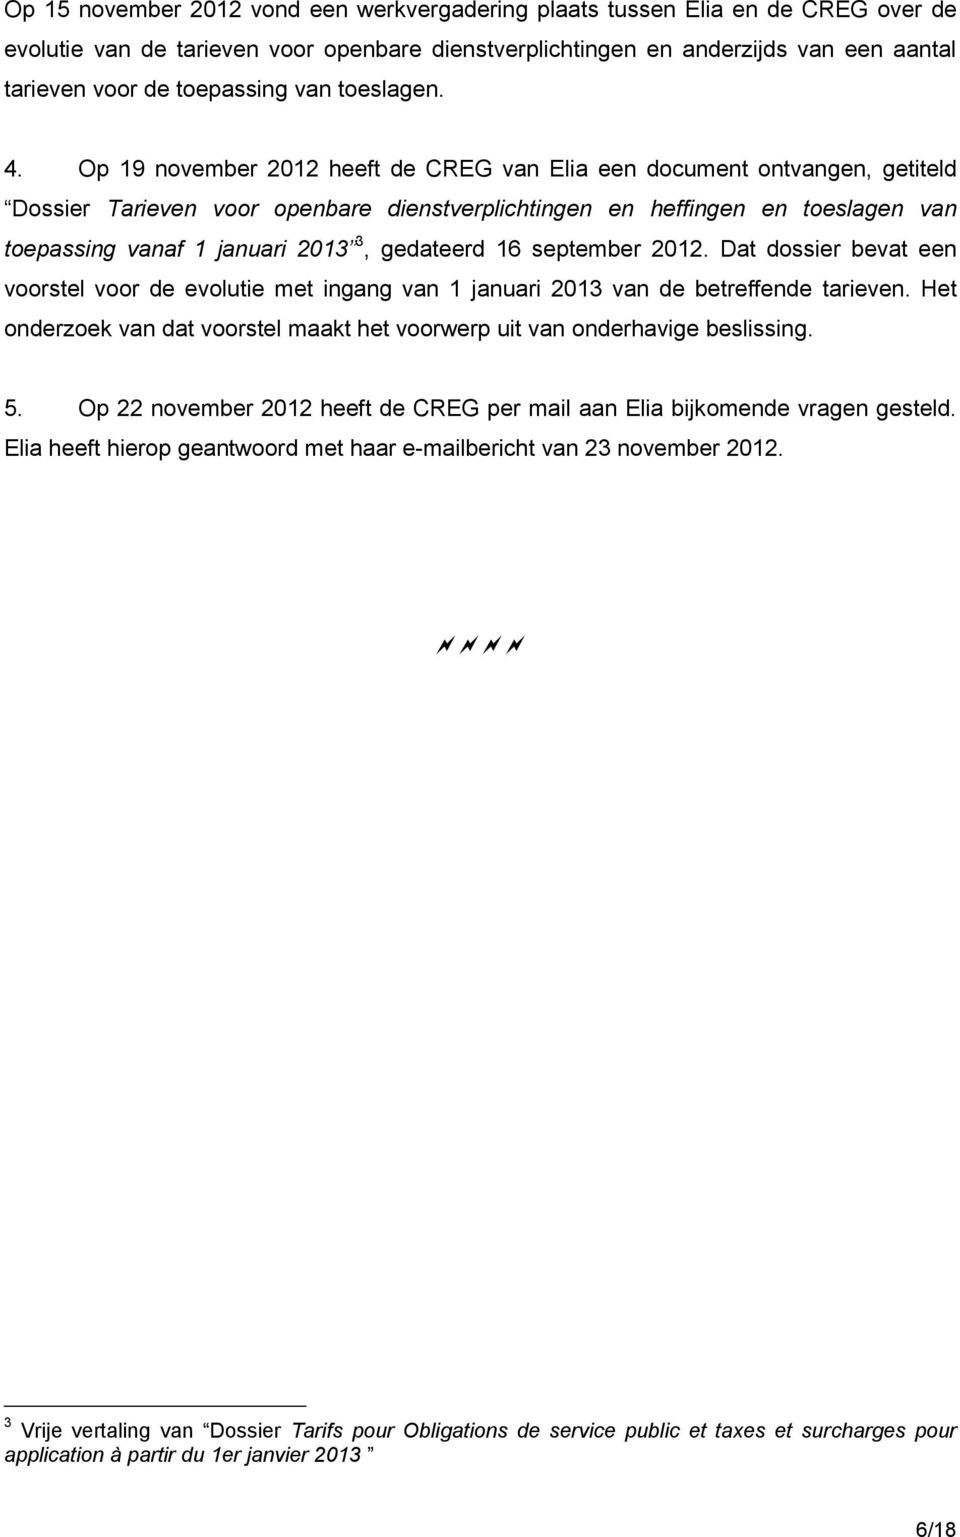 Op 19 november 2012 heeft de CREG van Elia een document ontvangen, getiteld Dossier Tarieven voor openbare dienstverplichtingen en heffingen en toeslagen van toepassing vanaf 1 januari 2013 3,